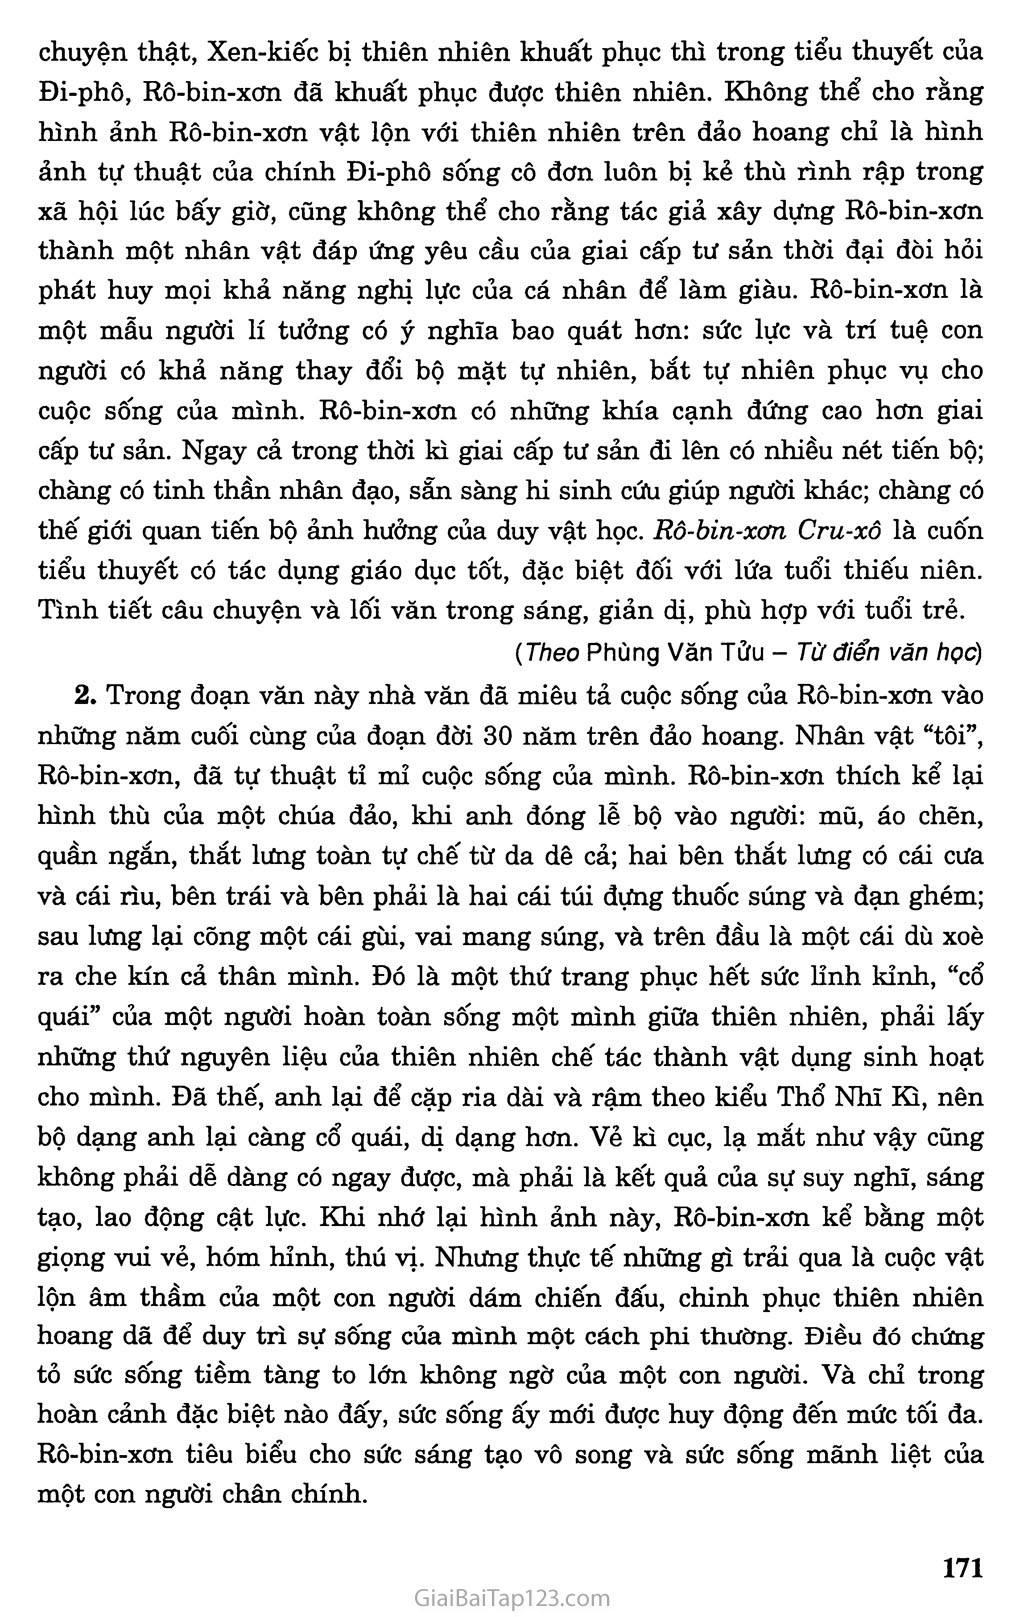 Rô - bin - xơn ngoài đảo hoang (trích Rô - bin - xơn Cru - xô) trang 4